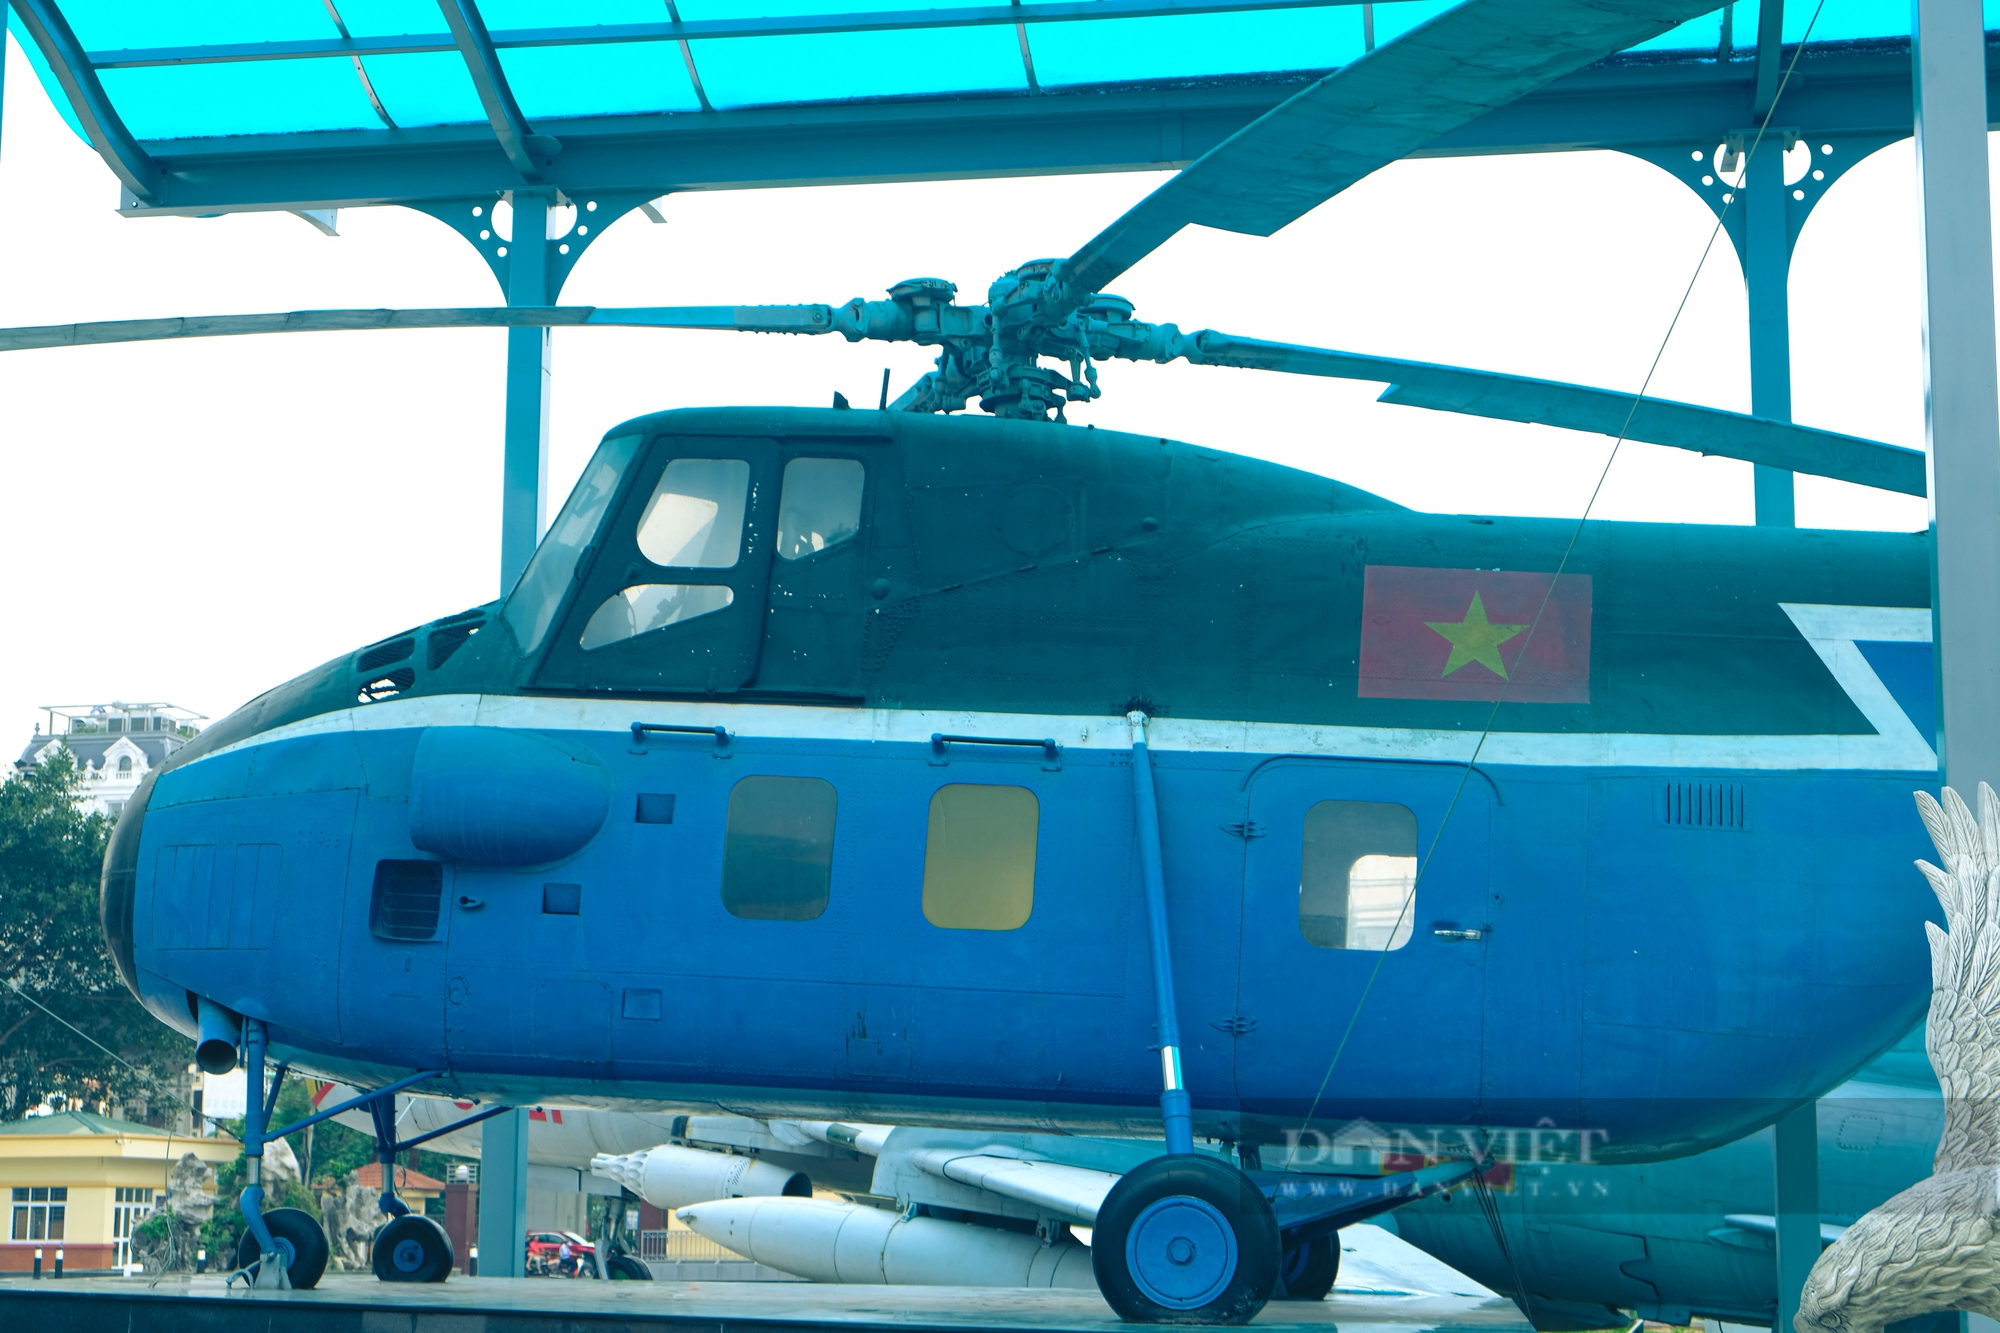 Trực thăng vận tải Mi-4 từng tháp tùng Bác Hồ đi công tác nhìn ra sao? - Ảnh 8.